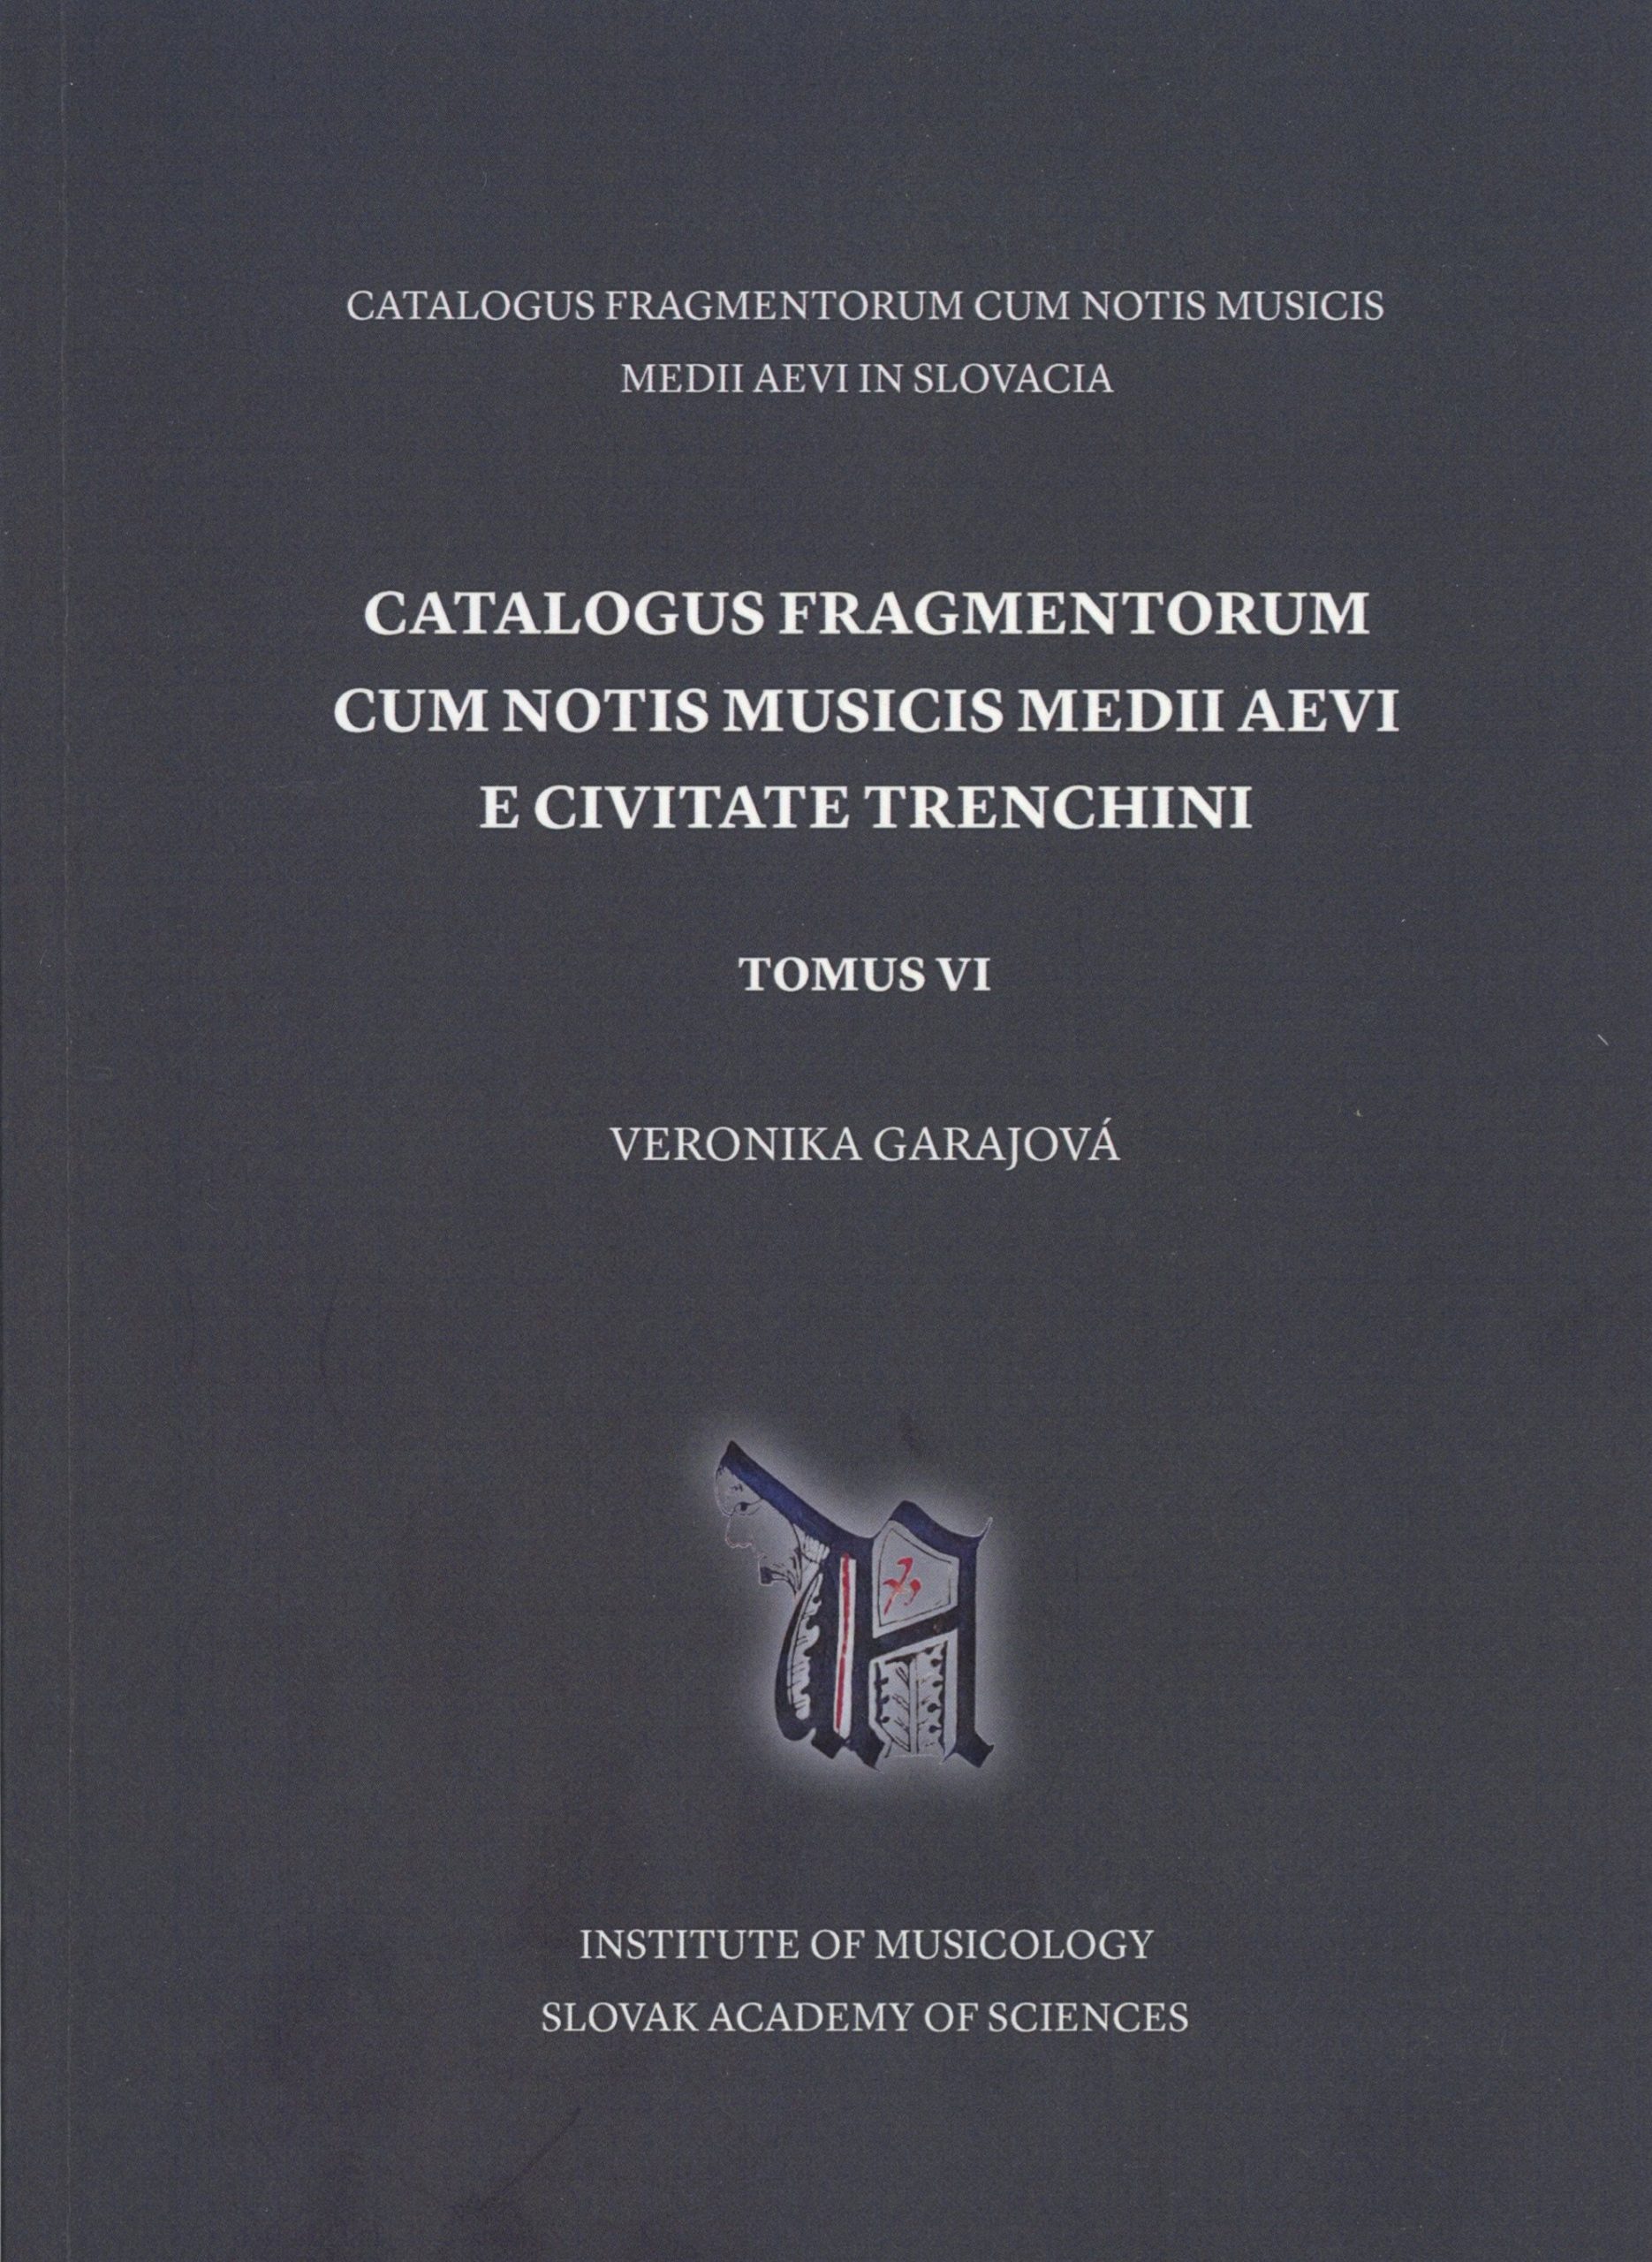 CatalogusFragmentorum-scaled